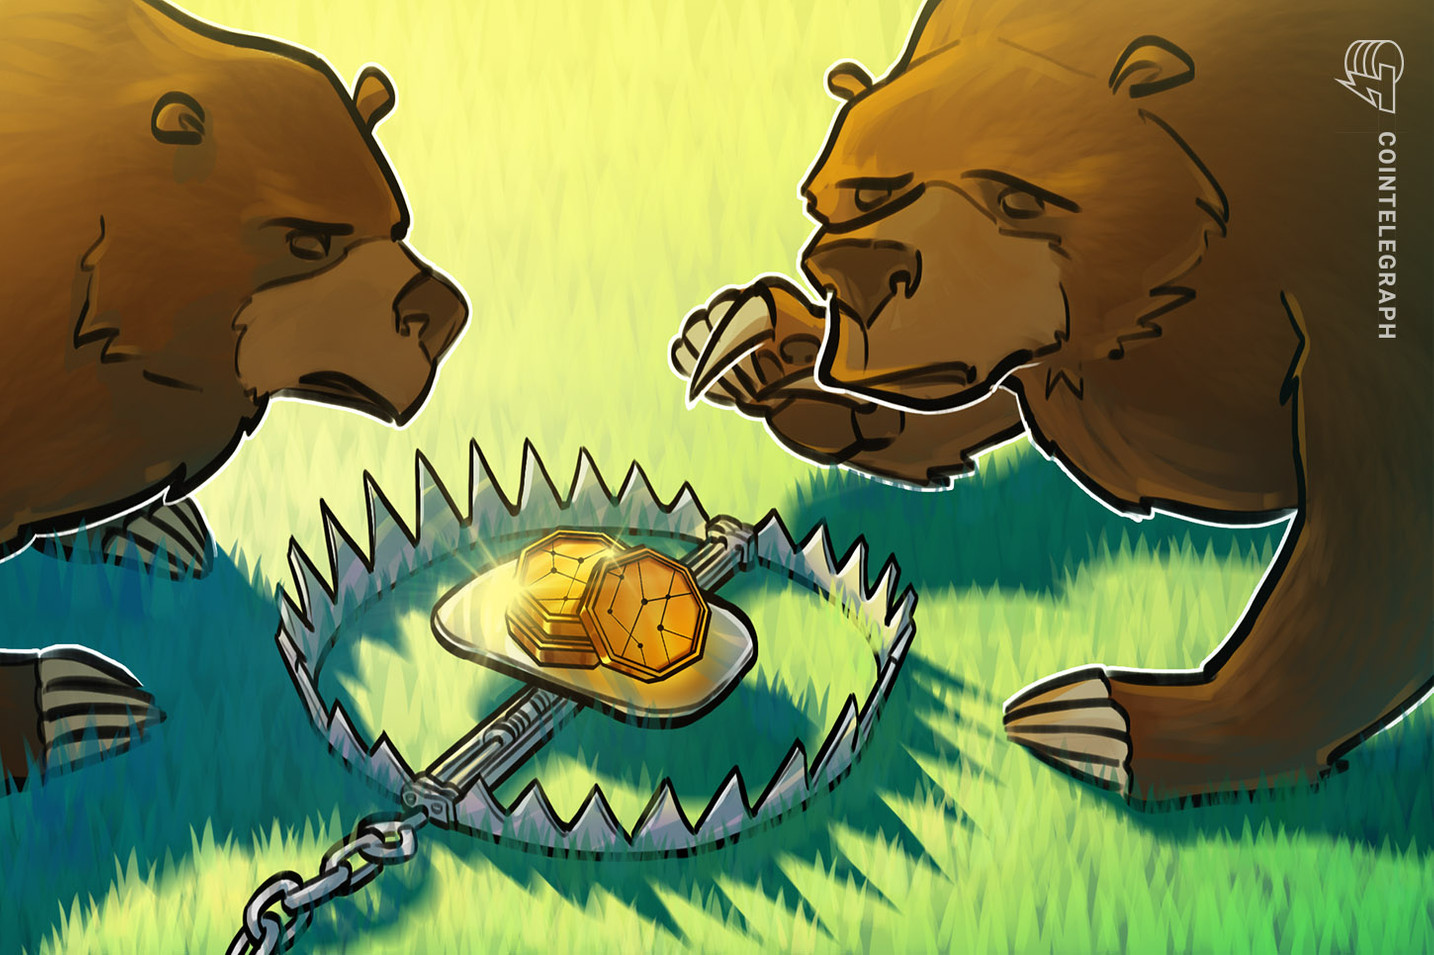 Đợt giảm của Bitcoin xuống dưới ngưỡng 20.000 USD chỉ là một “bẫy gấu”